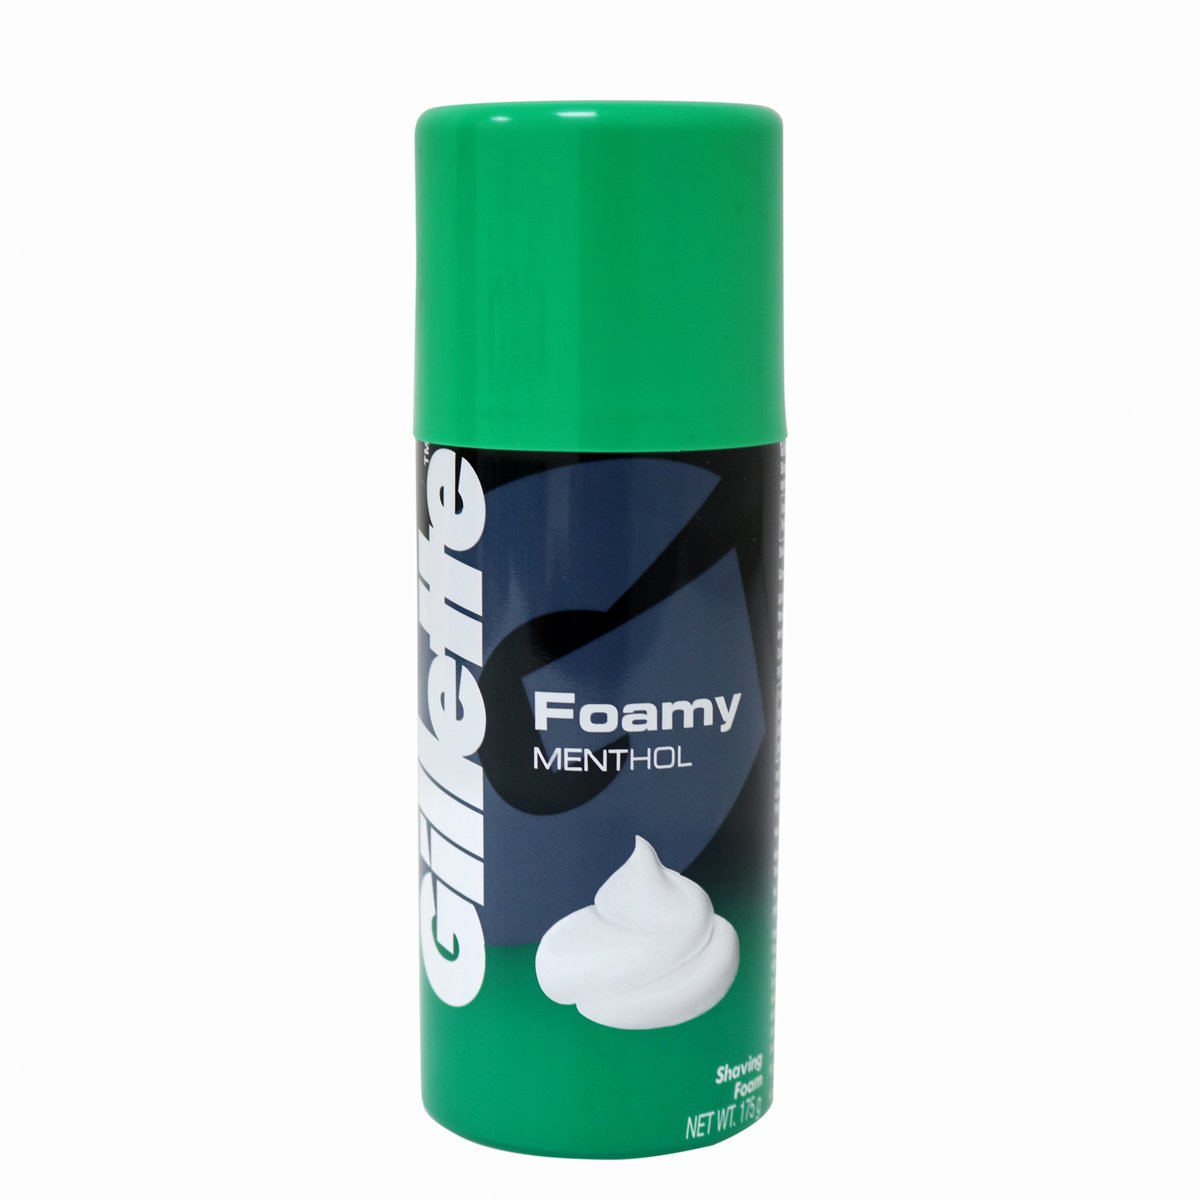 Gillette Foamy Menthol Shaving Foam 175g